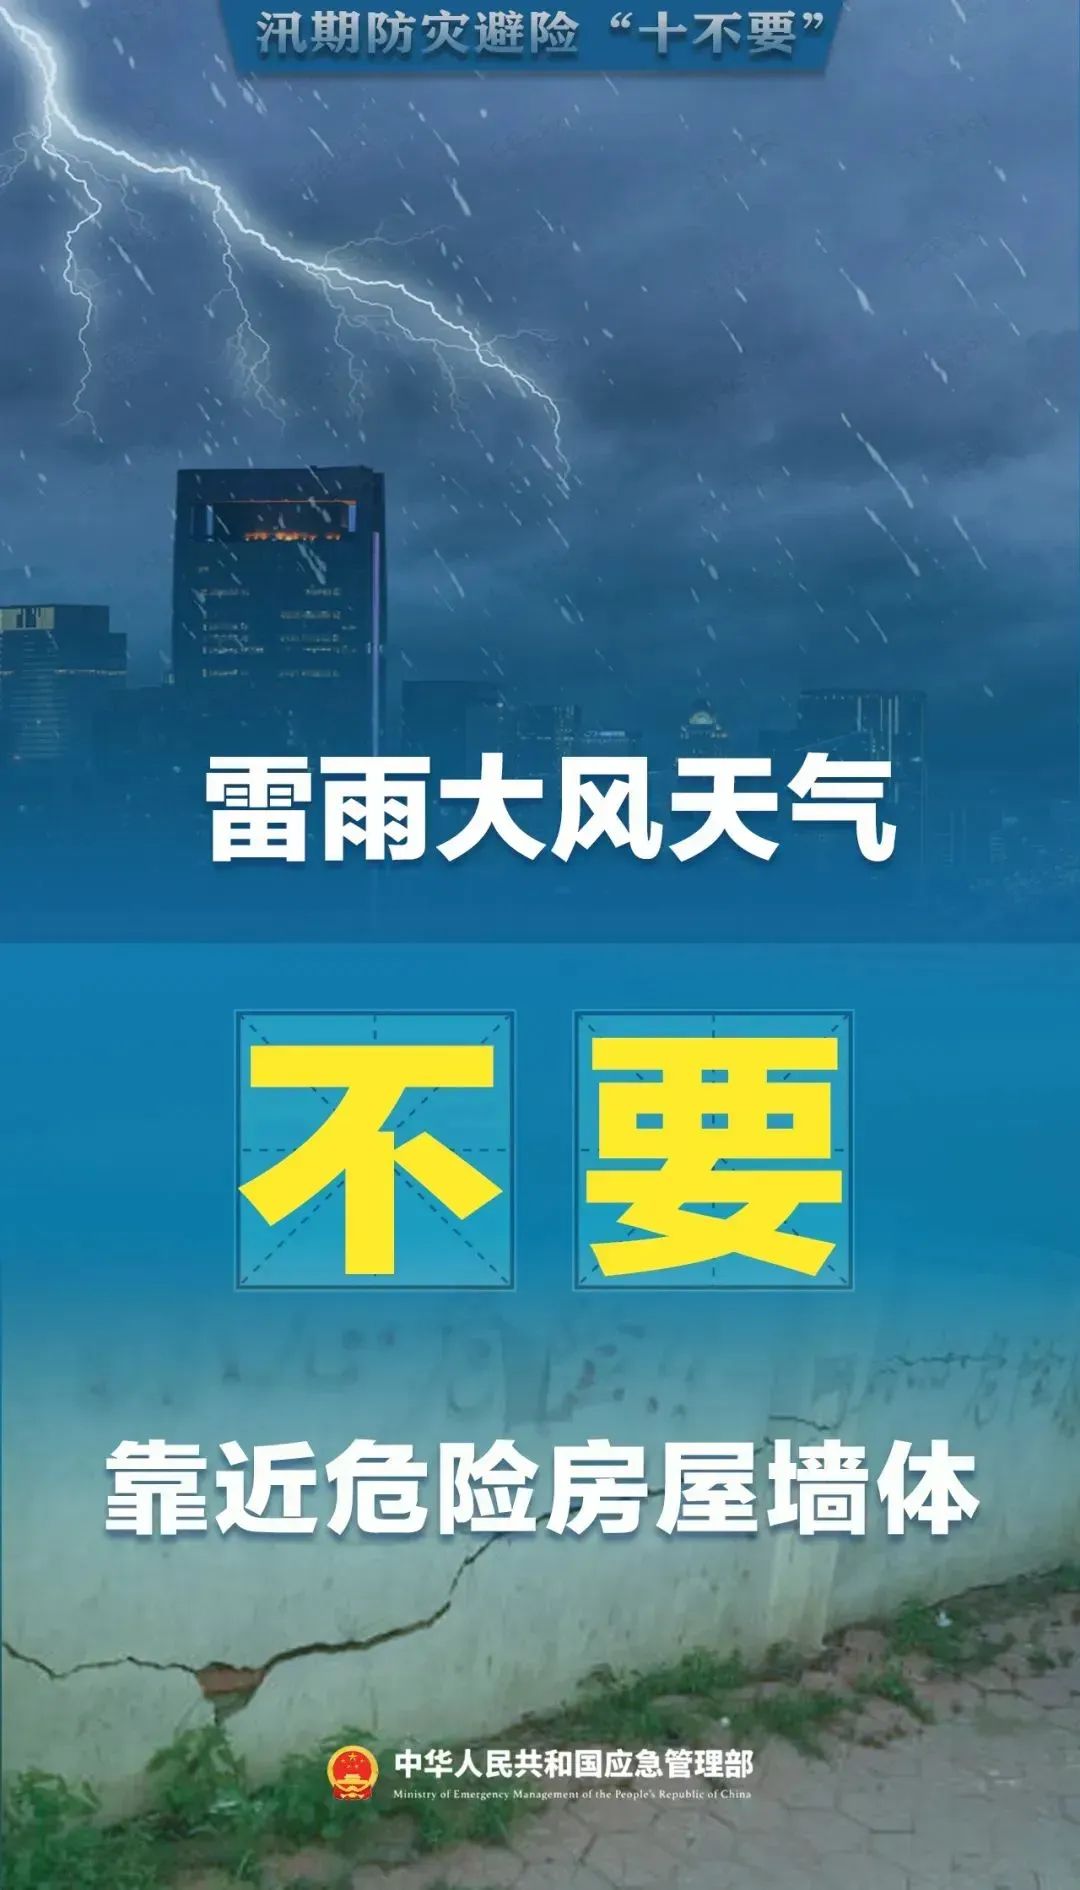 重要提醒!受四川部分地区强降雨天气影响,成都多趟列车停运